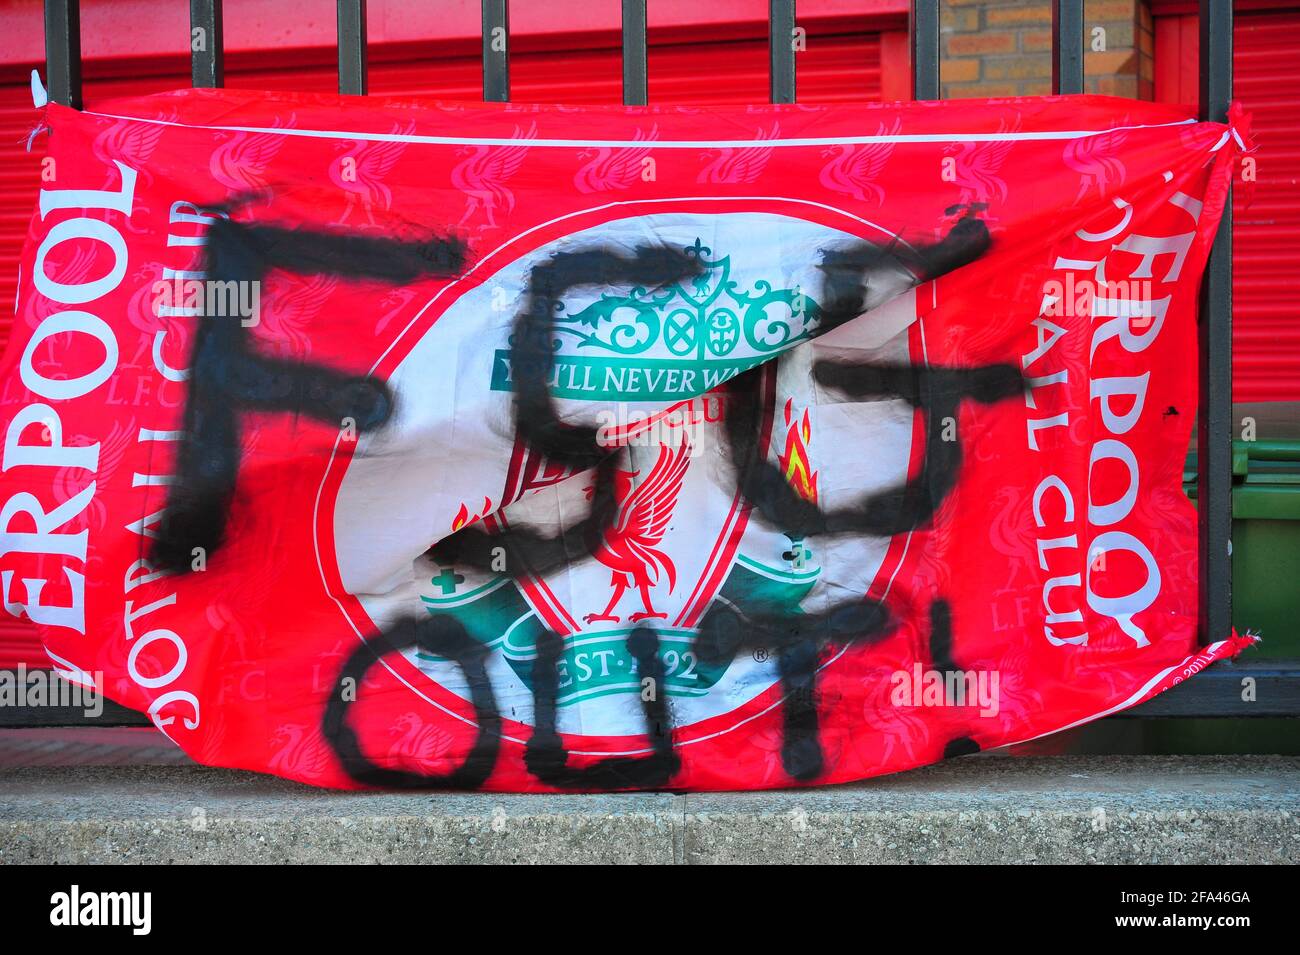 Bannières attachées aux portes et à la clôture du Liverpool football Club par des fans protestant contre l'intention des clubs de rejoindre une Super League européenne. Banque D'Images